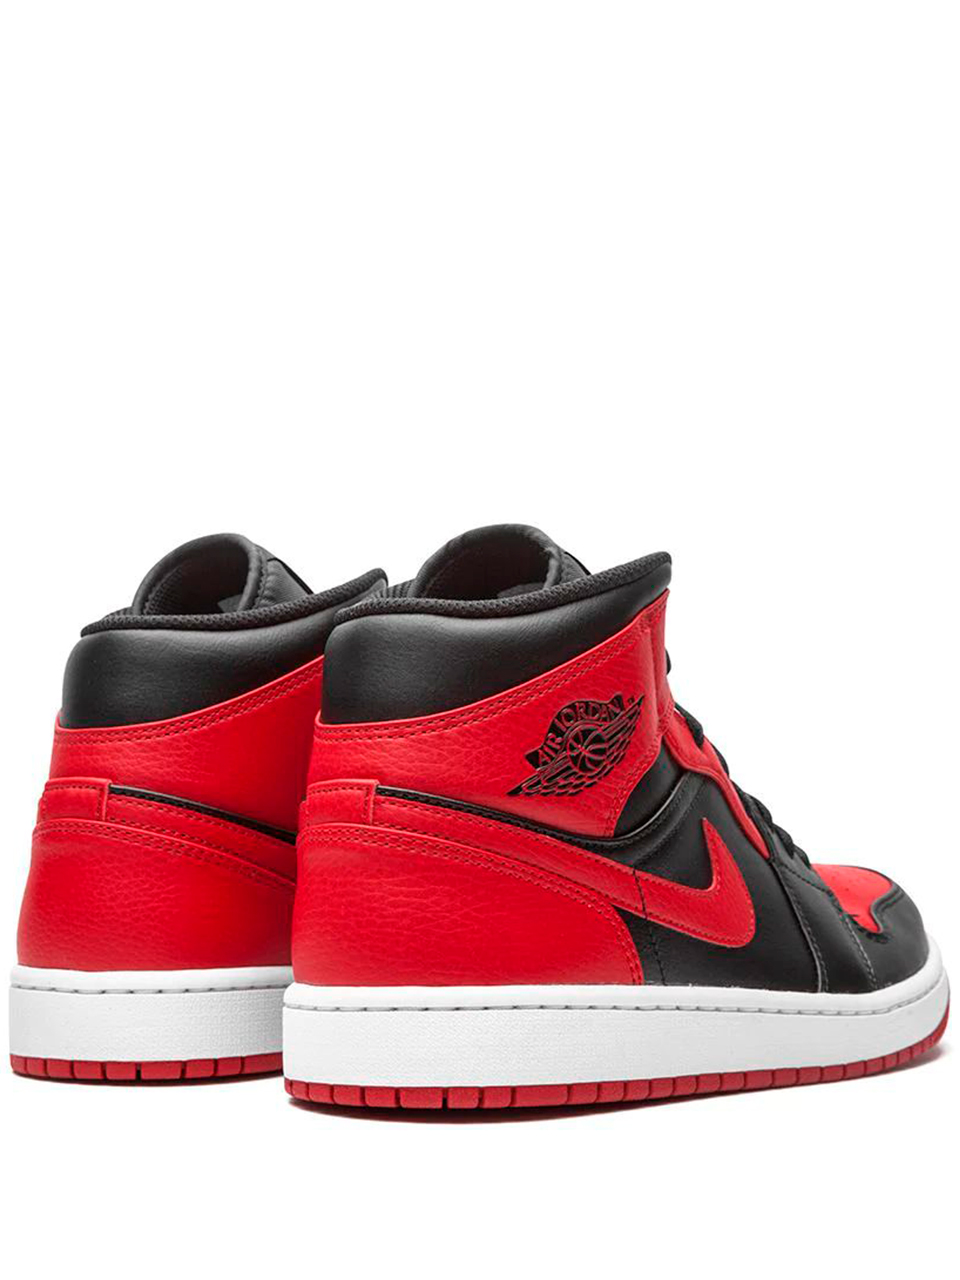 Imagem de: Tênis Nike Air Jordan 1 Mid Vermelho e Preto